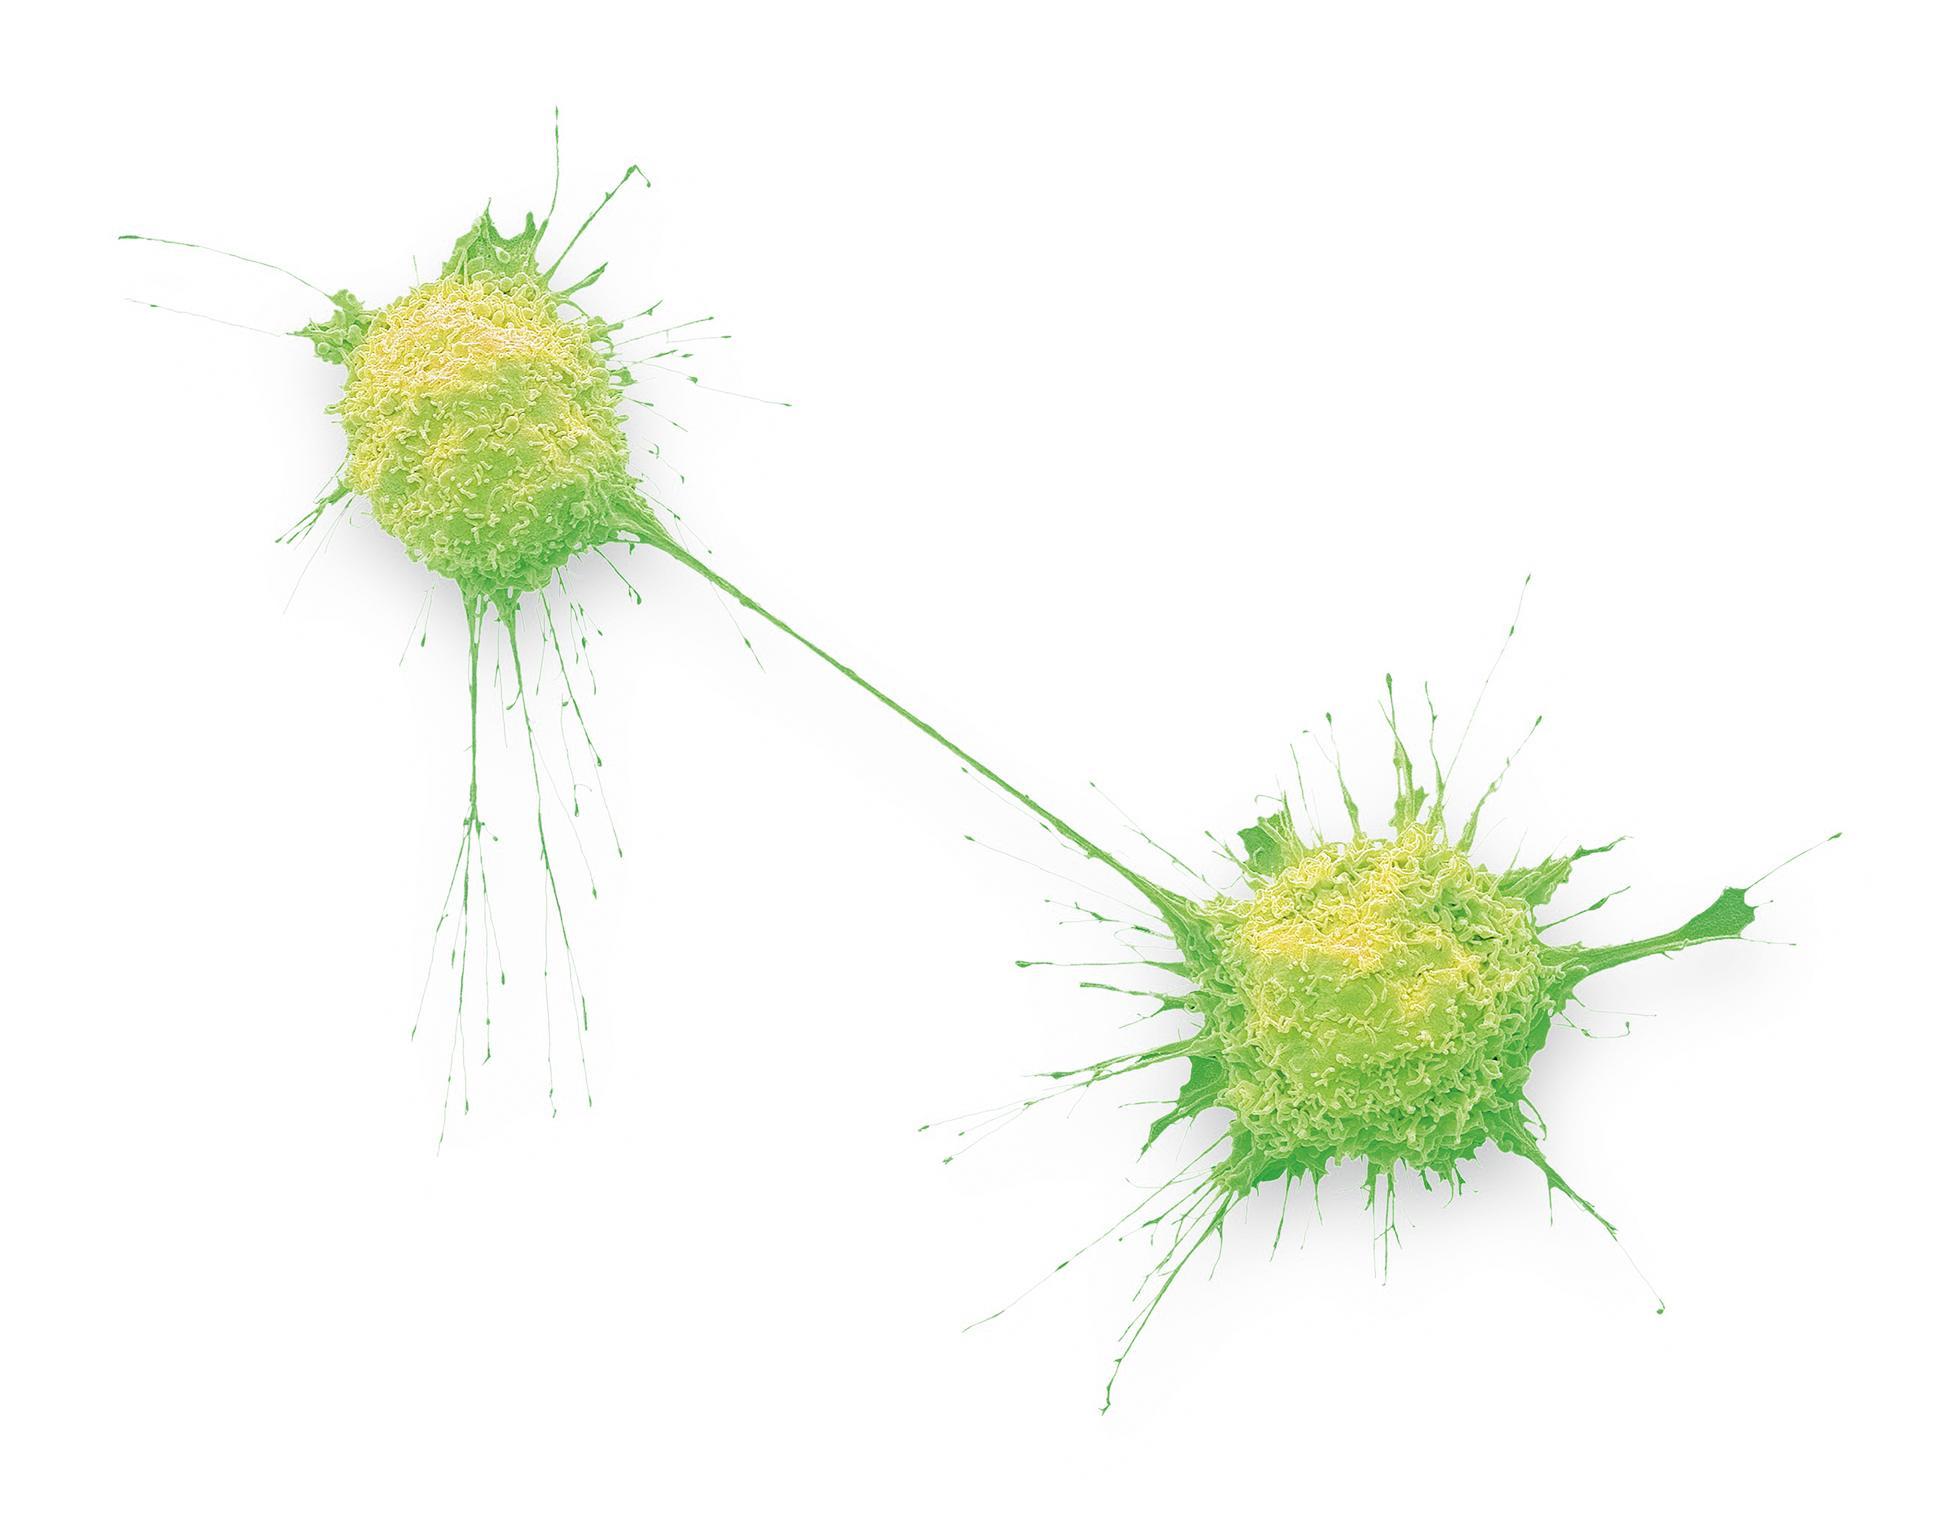 Cellule cancéreuse de prostate en cours de division (image grossie 2000x). Cellule cancéreuse d’ostéosarcome (image grossie 4000x).